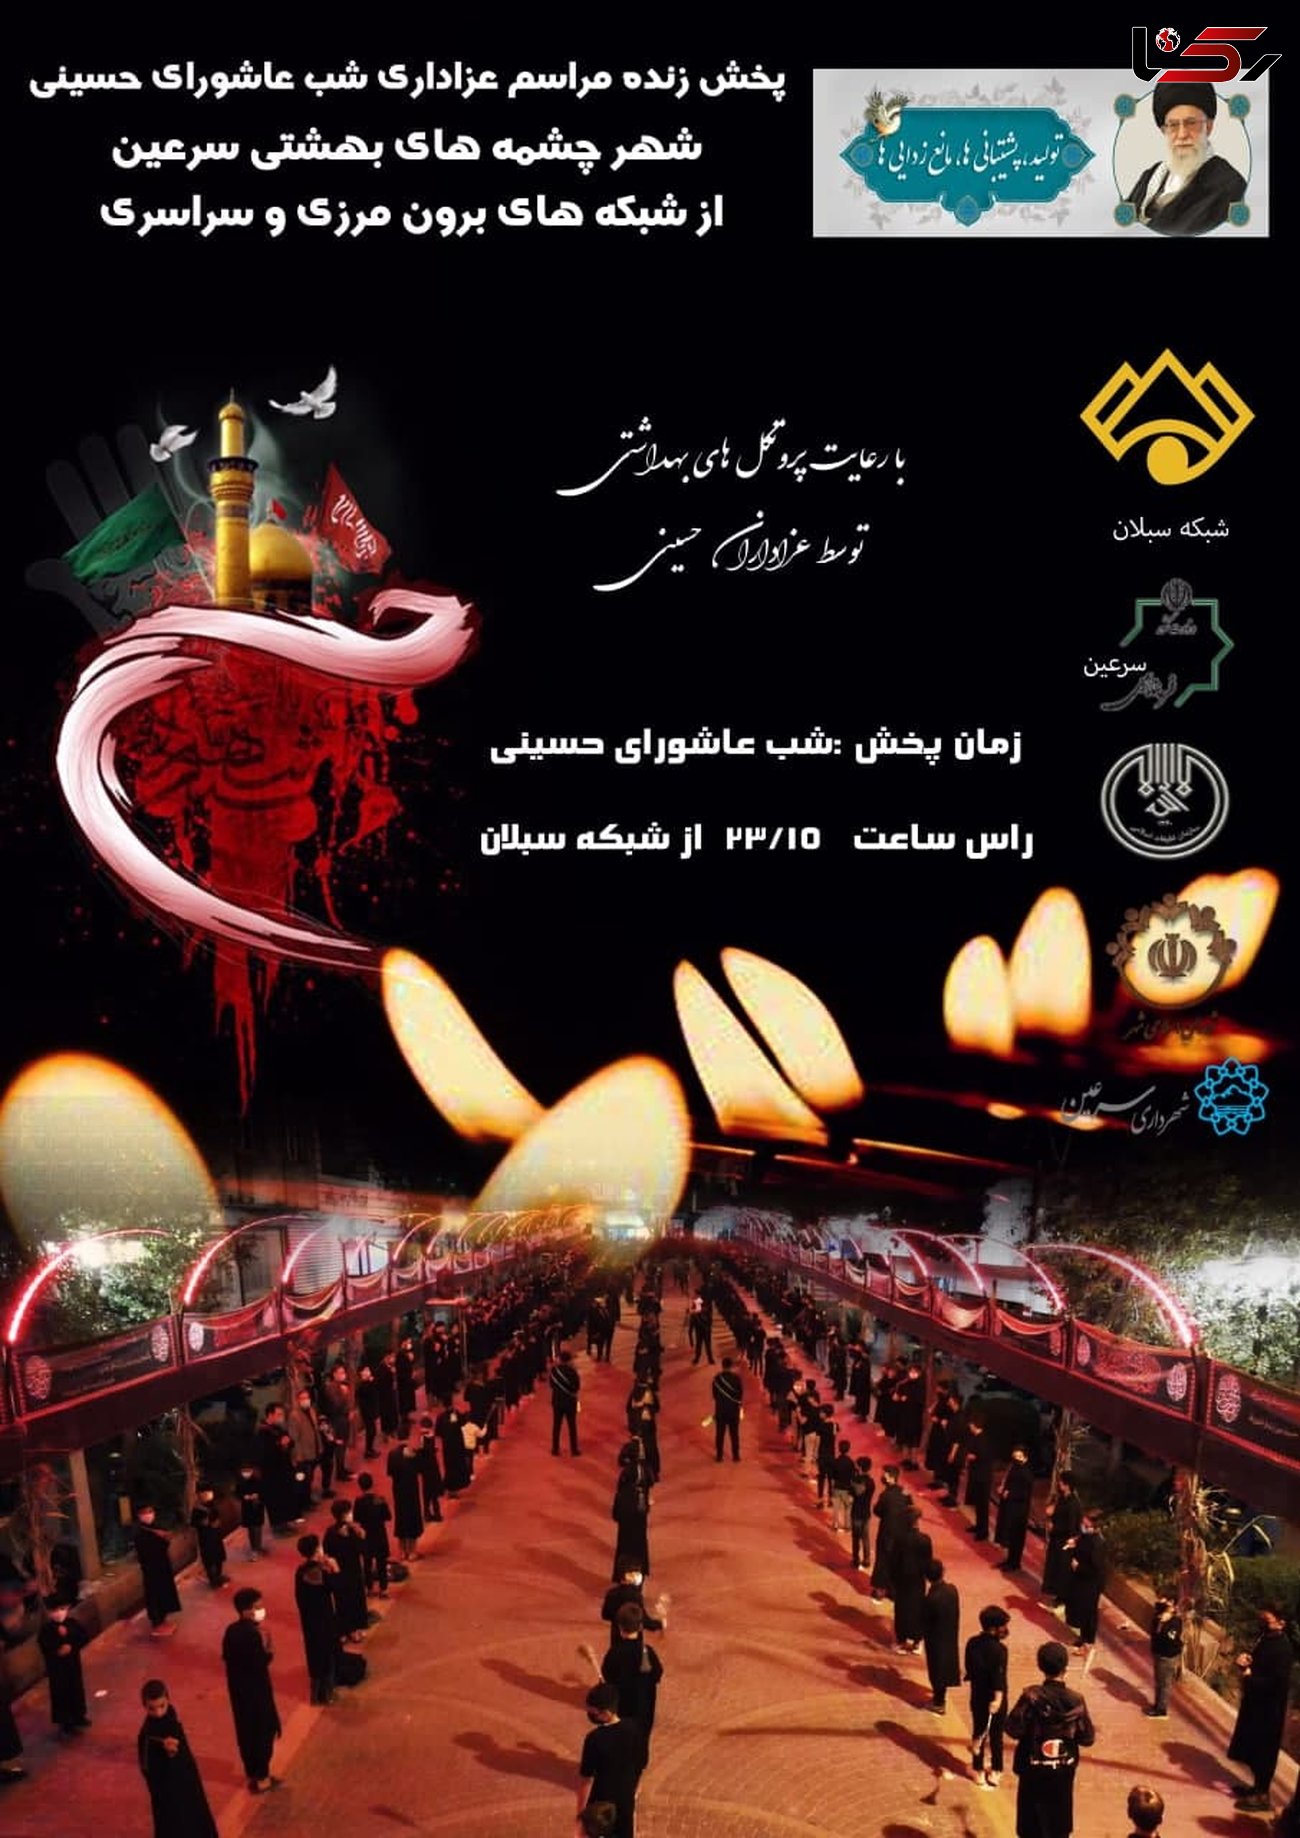 پخش مراسم زنجیرزنی عزاداران حسینی شهر سرعین از شبکه های سراسری